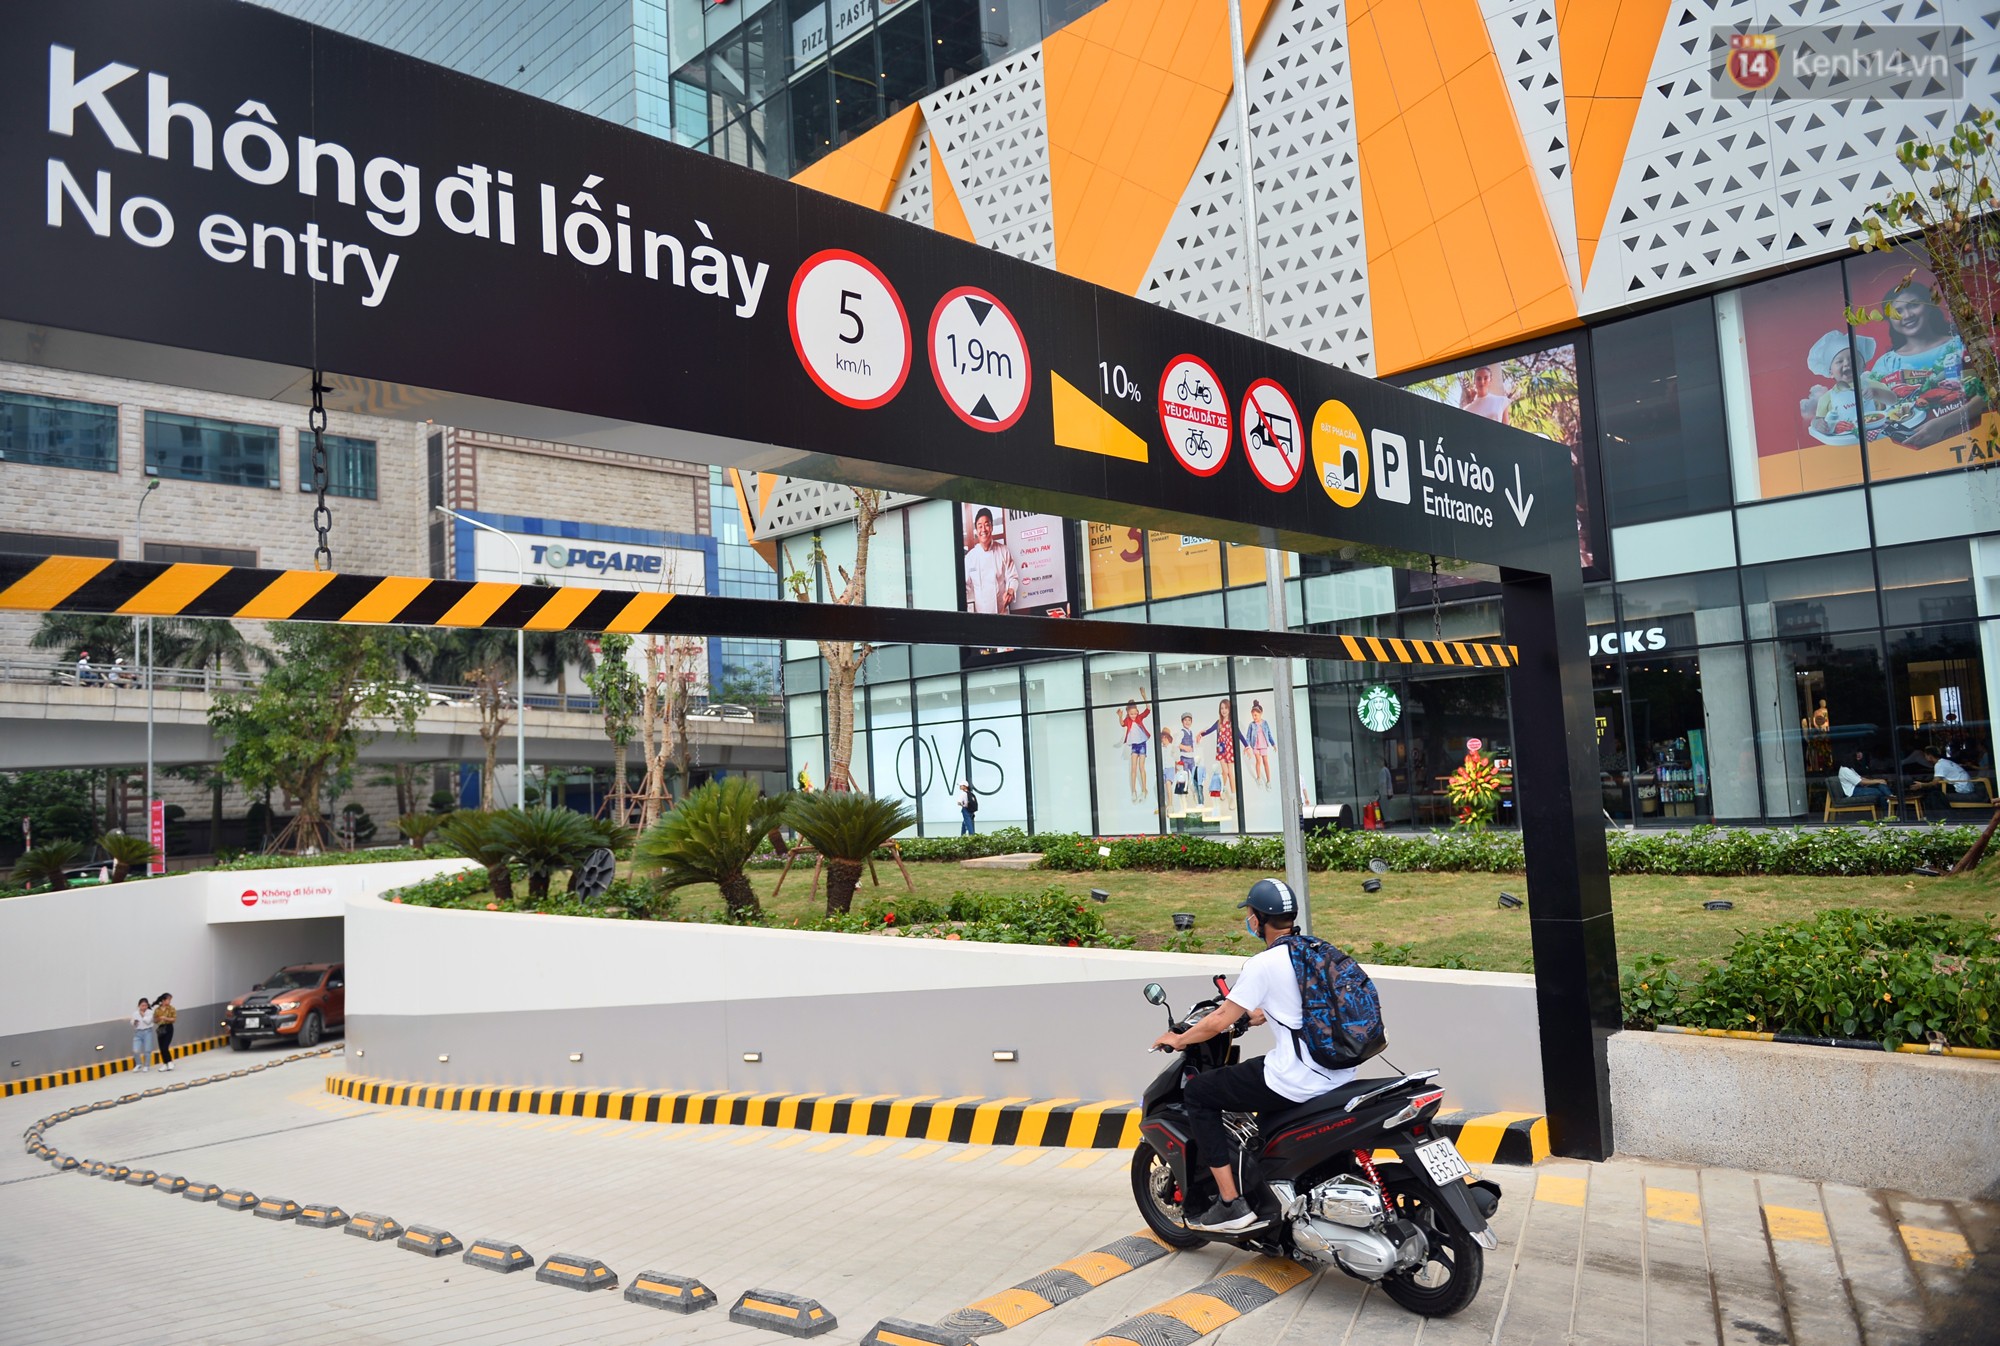 Hà Nội: Chính thức khai trương Vincom Center thứ 10 tại Trần Duy Hưng - Ảnh 7.